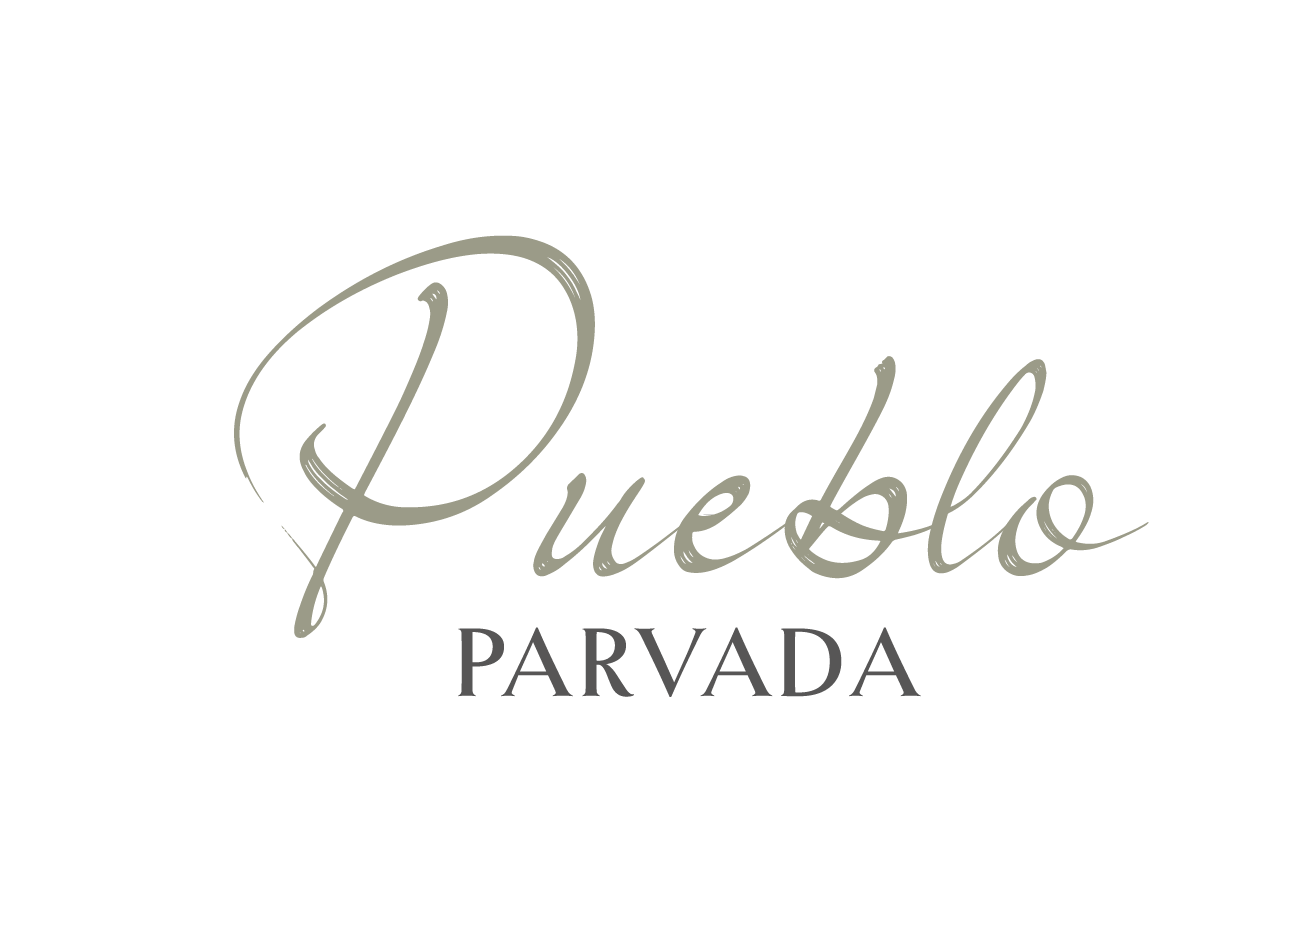 PUEBLO PARVADA